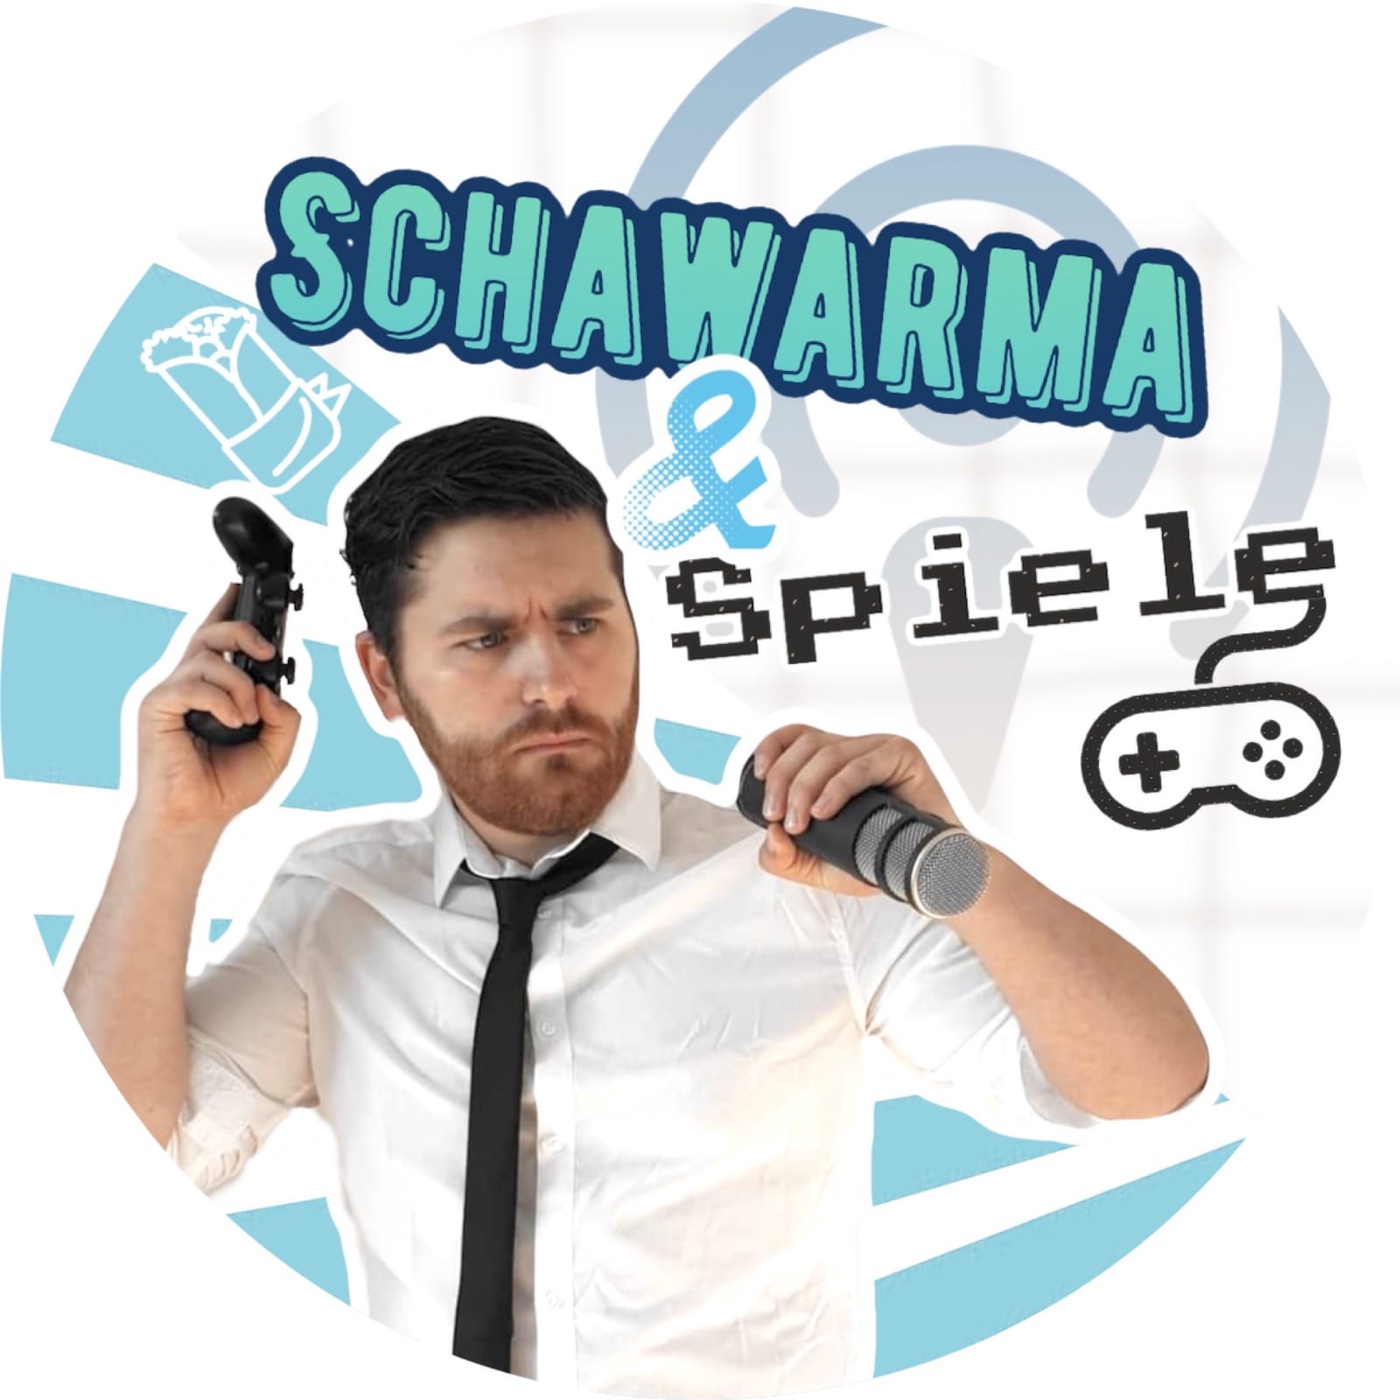 Schawarma & Spiele